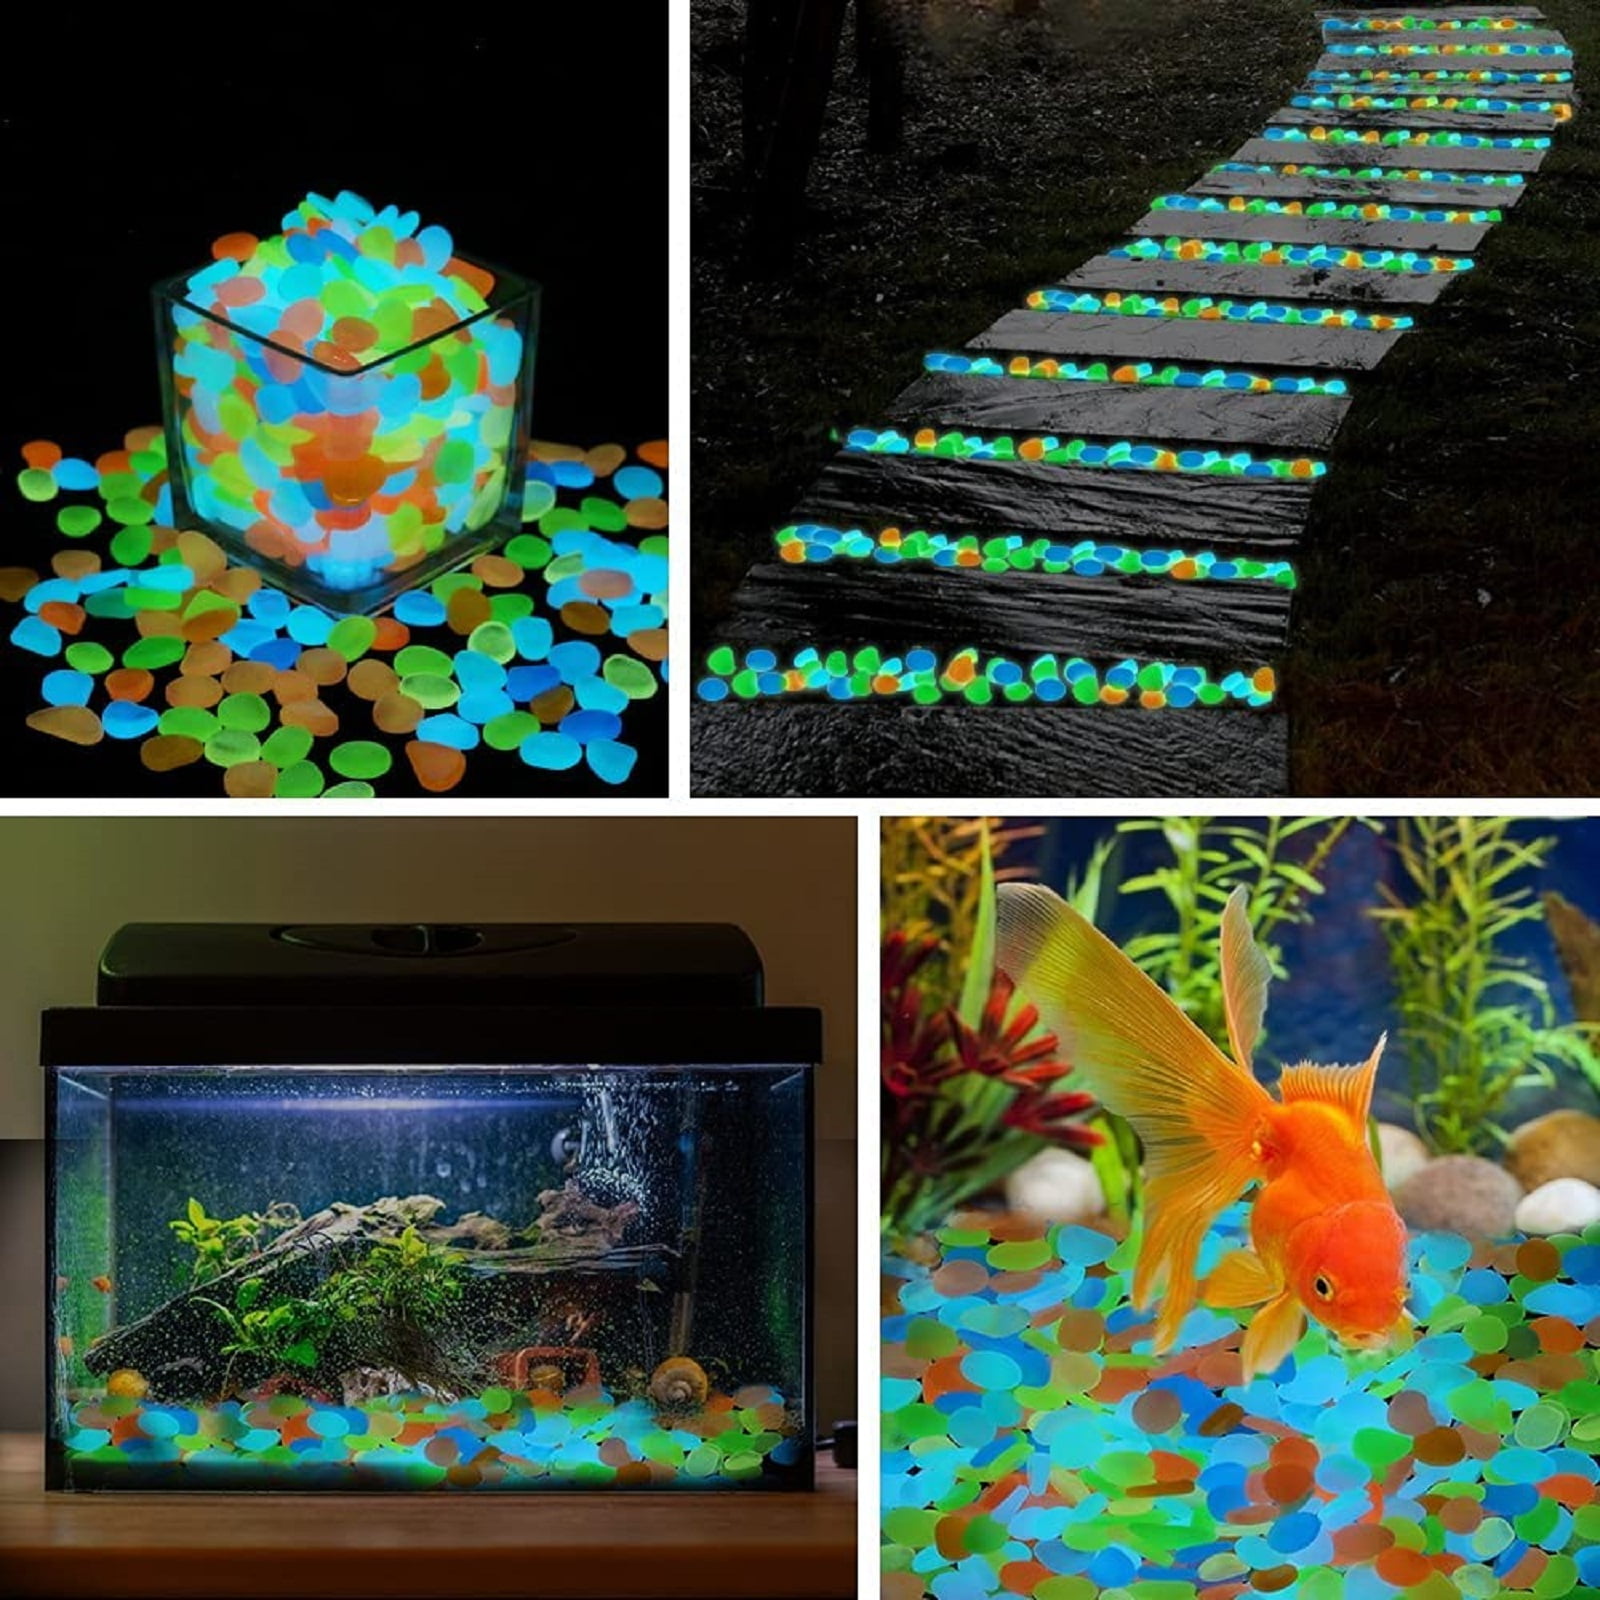 Oubest Fish Tank Rocks Glow Blue/Glow in the Dark Pebbles for Garden/F –  KOL PET